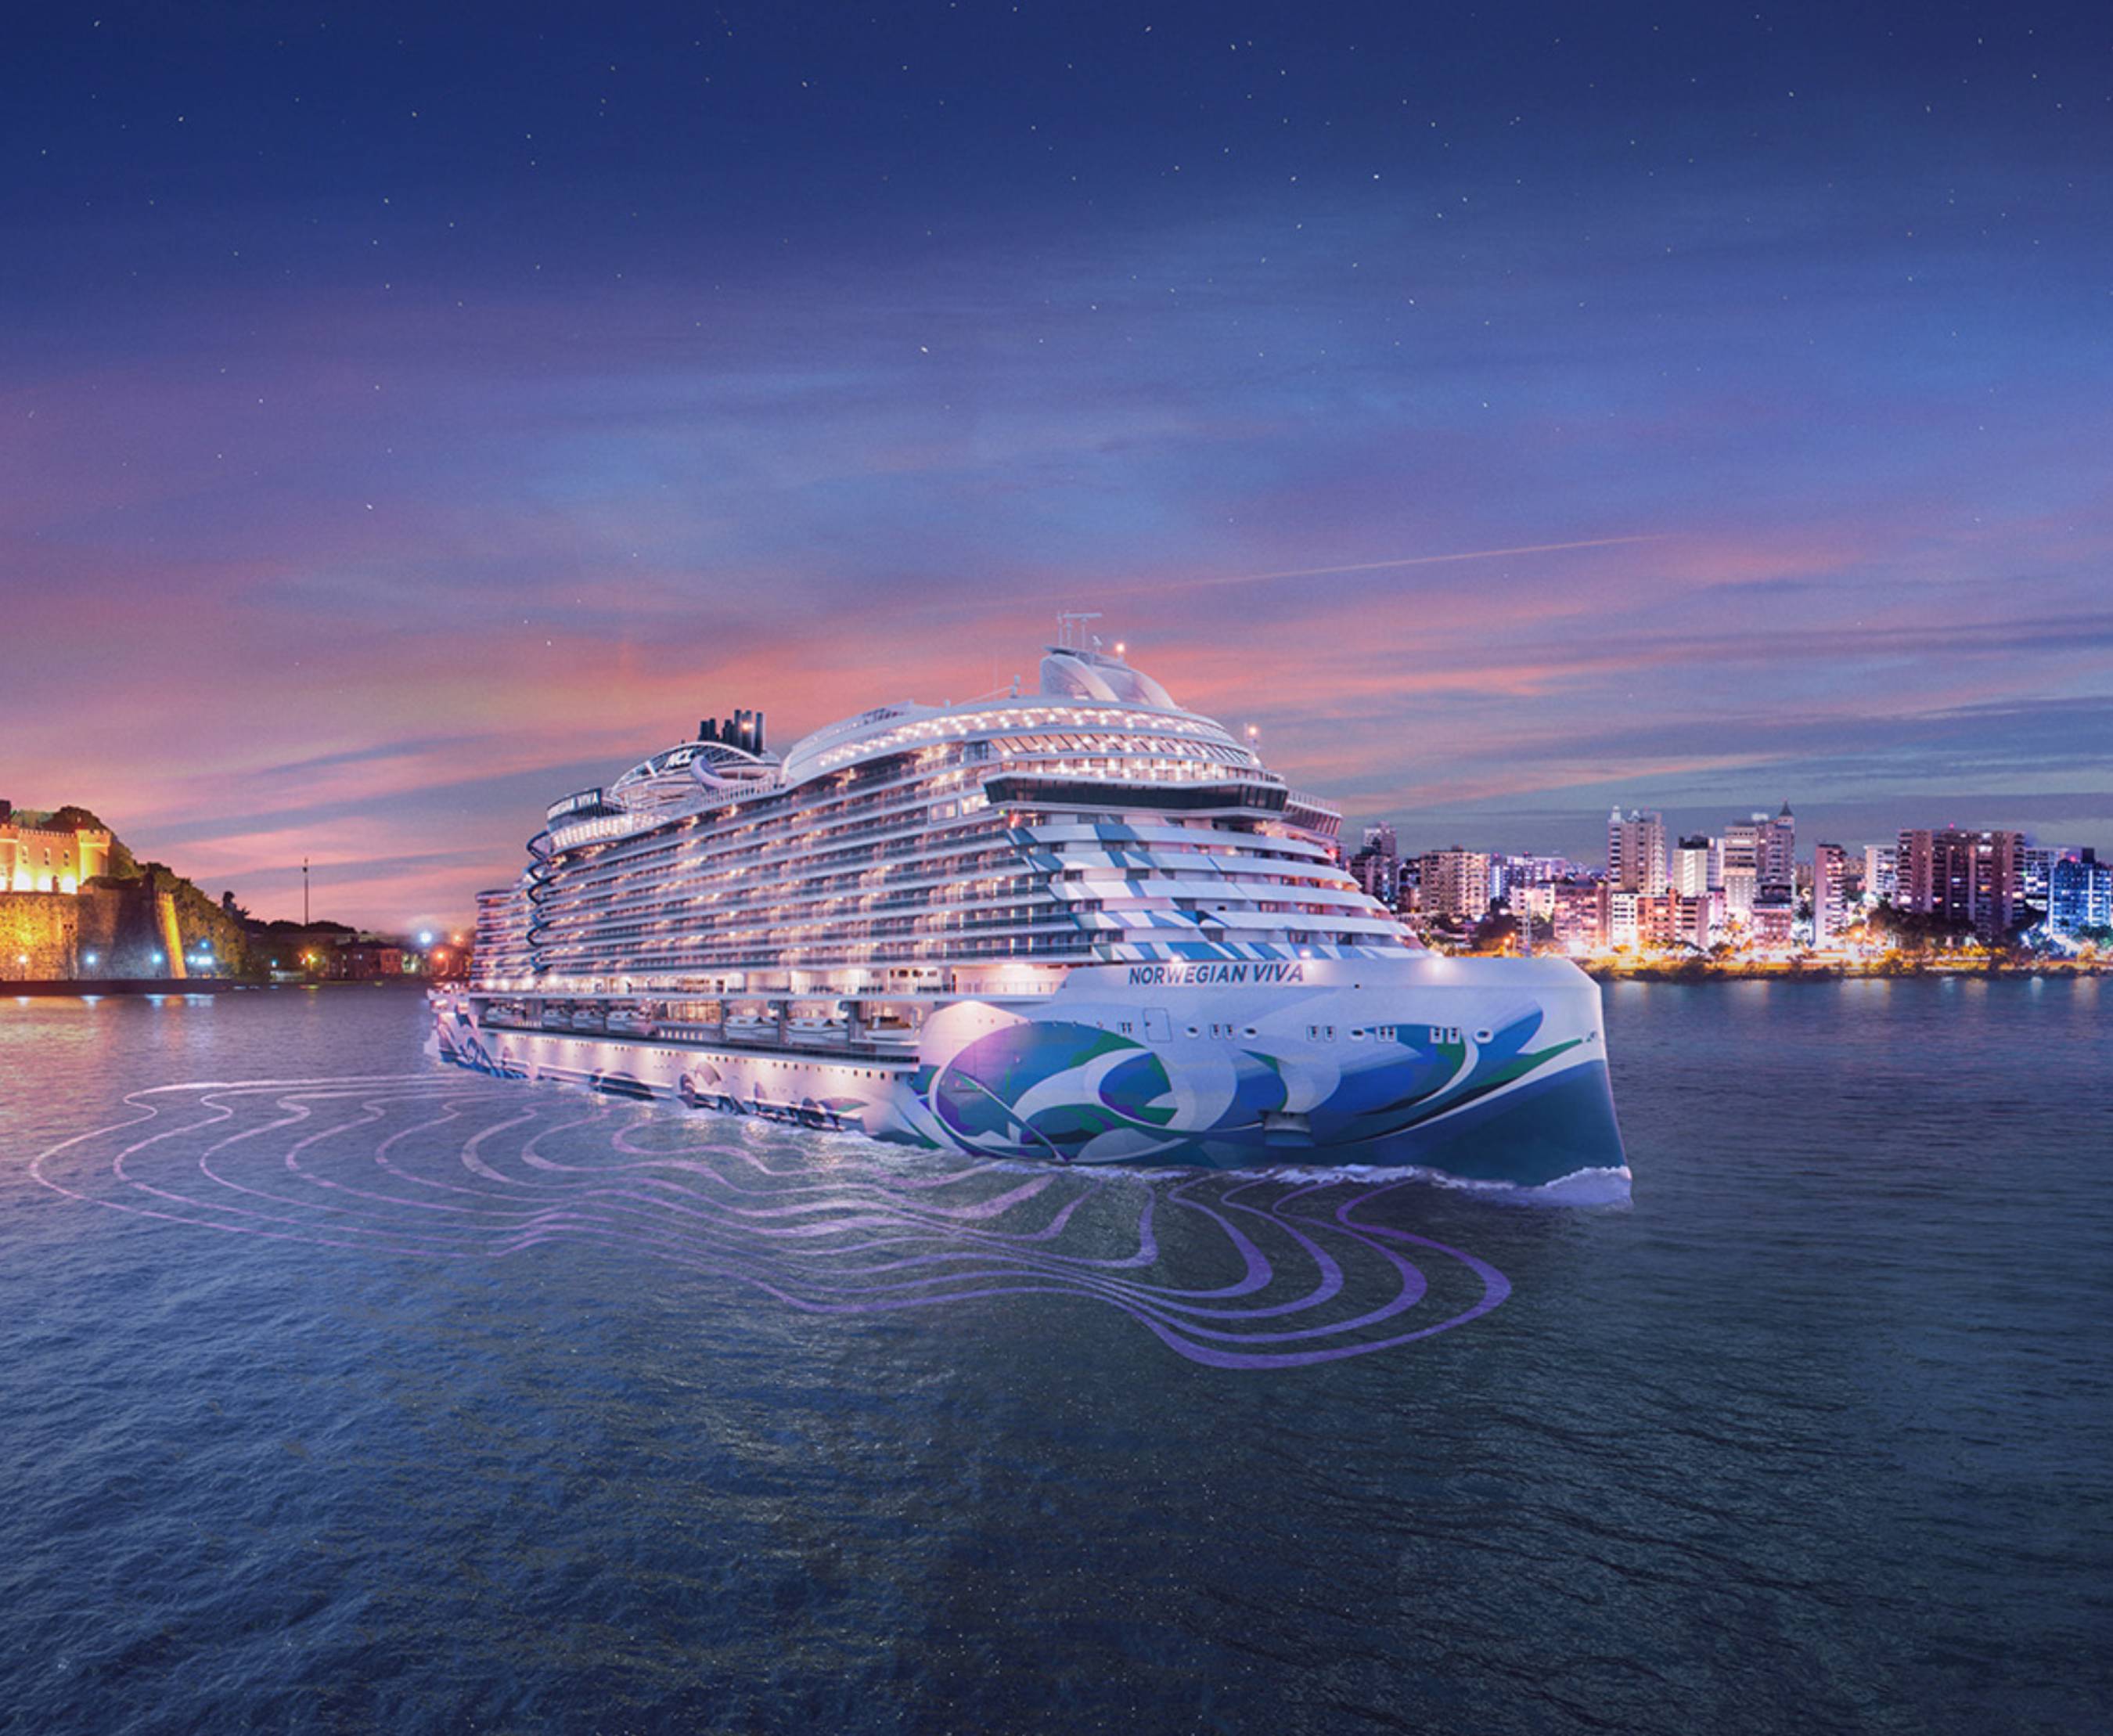 El barco más nuevo de Norwegian Cruise Line, Norwegian Viva, será bautizado en Miami en noviembre de 2023 antes de llegar a la vibrante ciudad de San Juan, Puerto Rico, para una selección de viajes al Caribe desde diciembre de 2023 hasta abril de 2024.